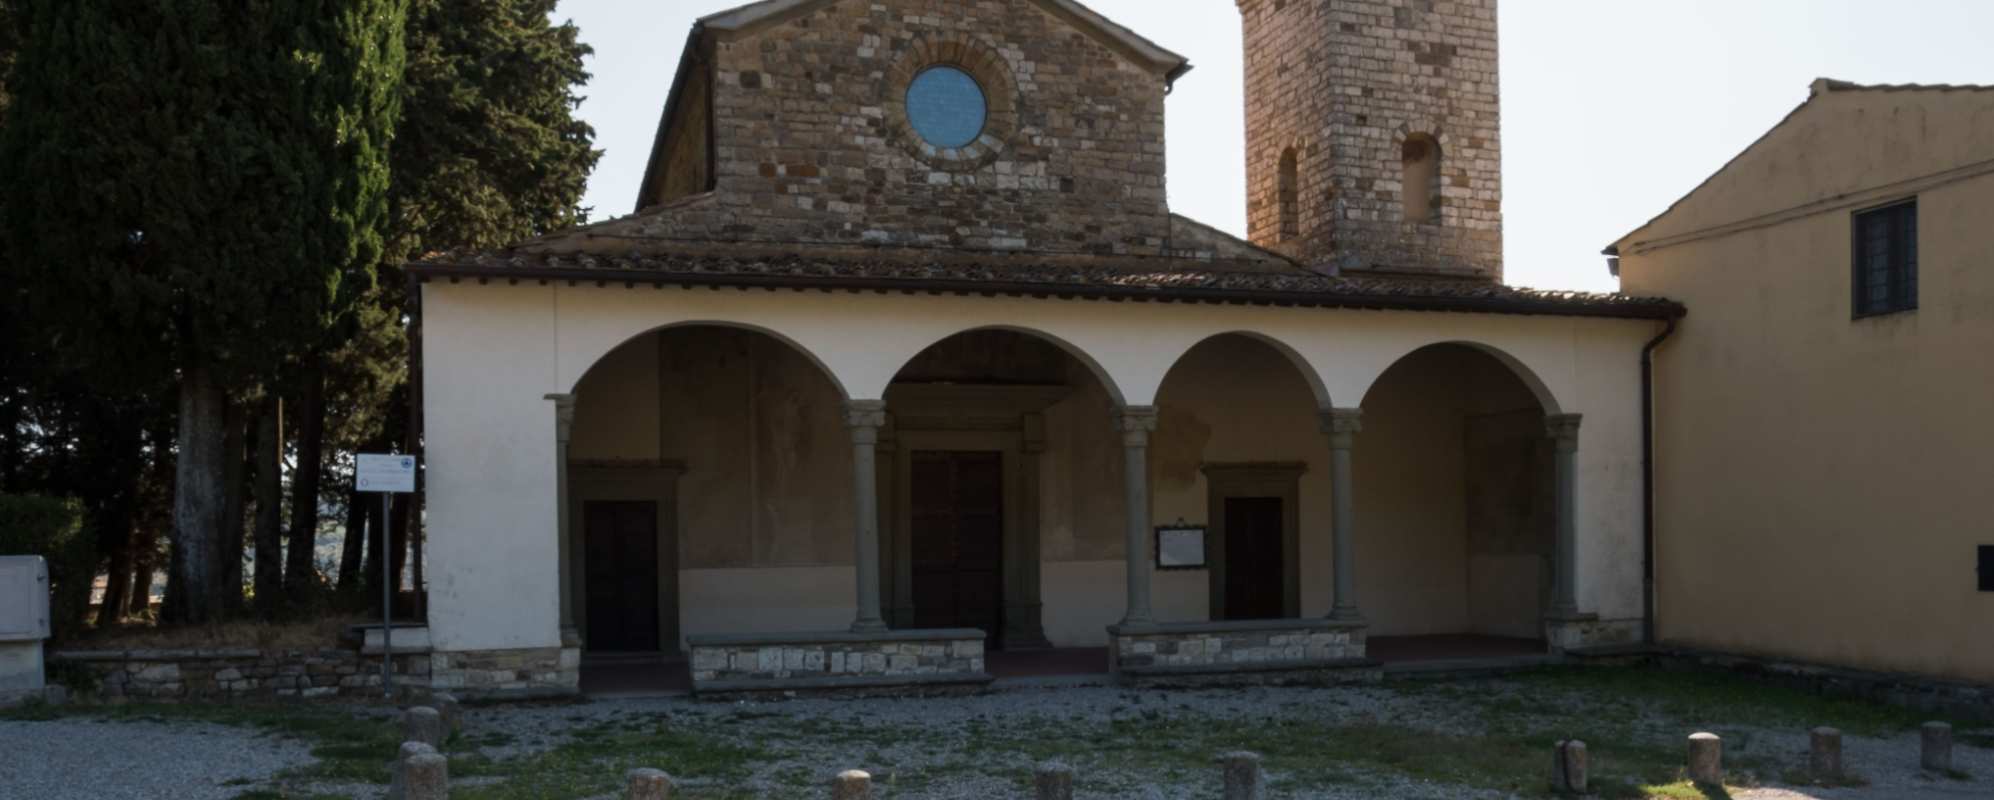 Parish church of Cercina